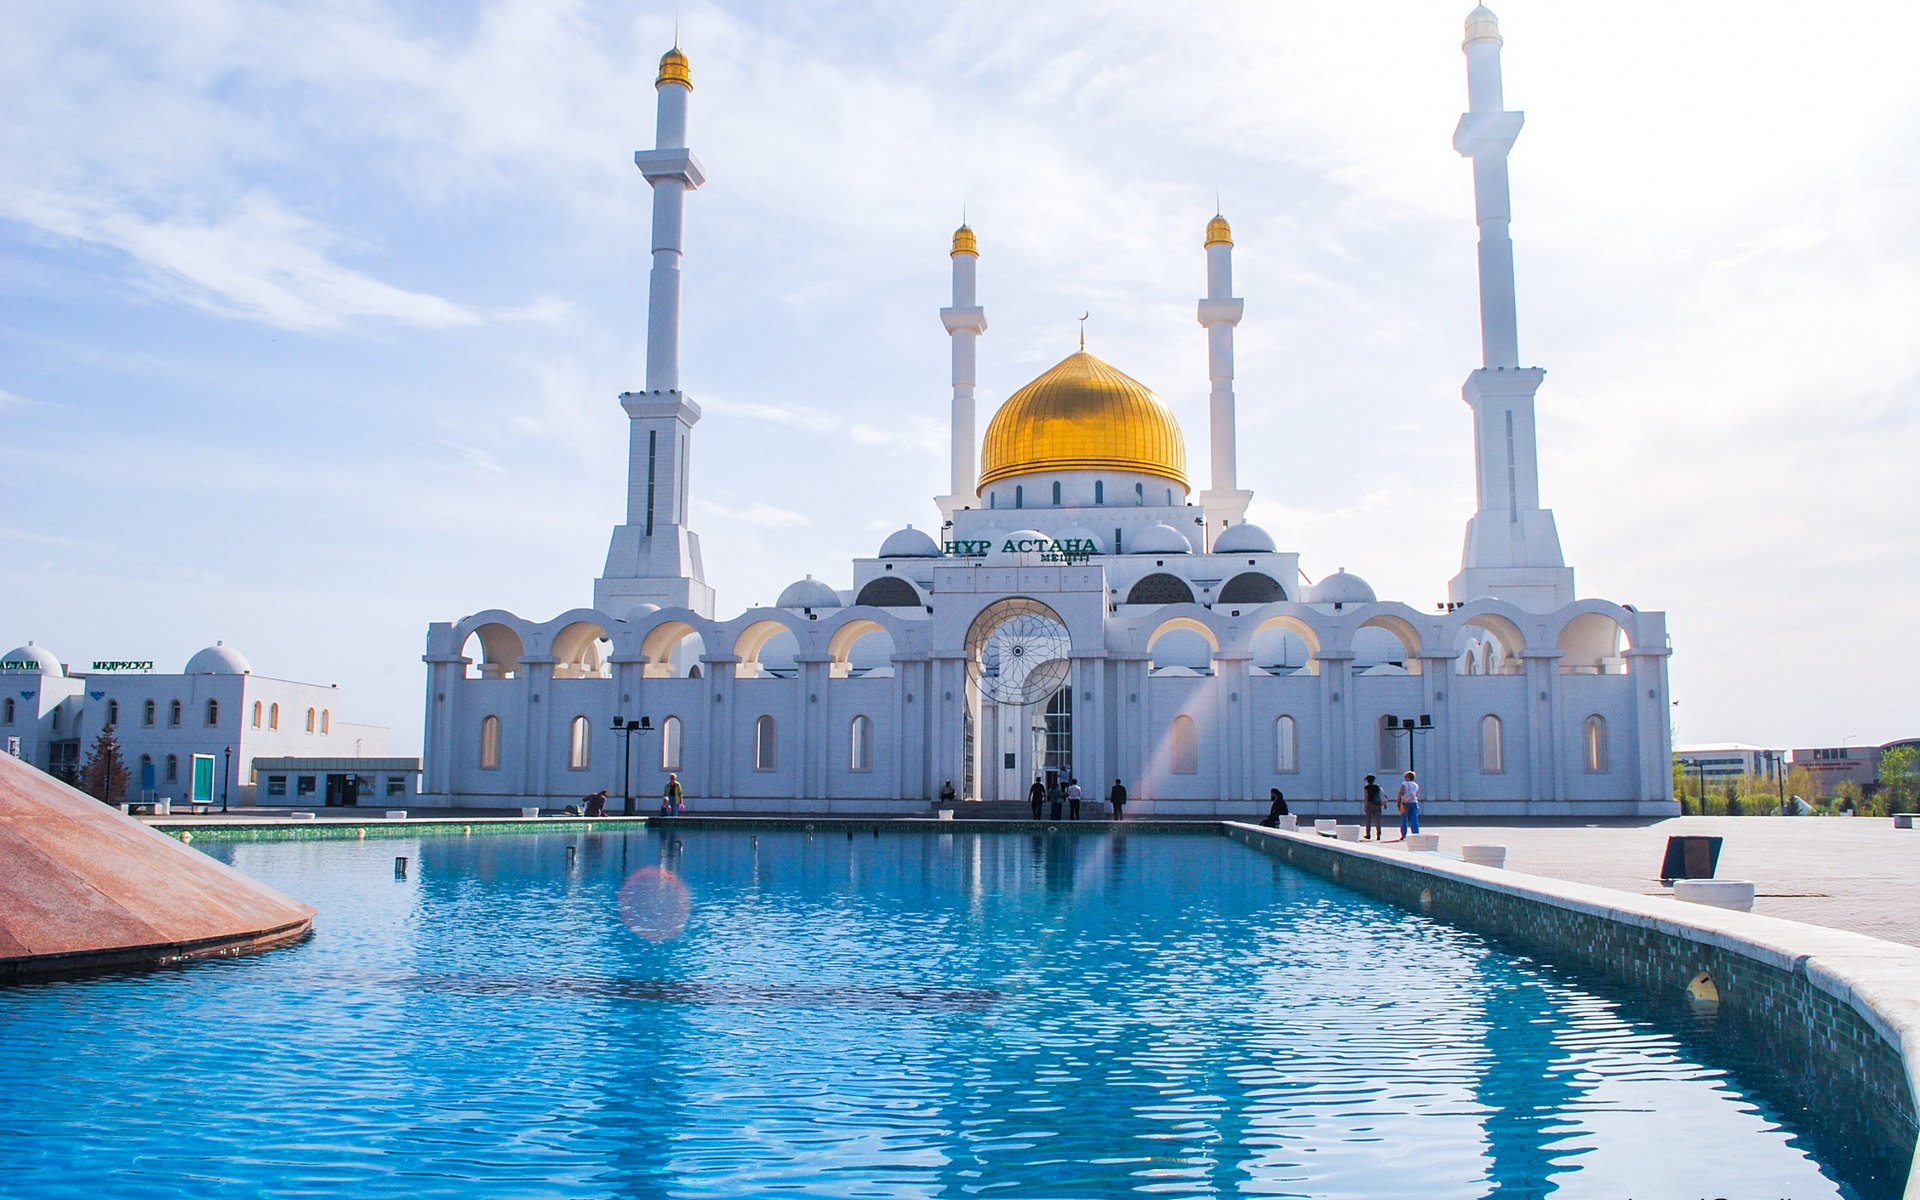 Скачать обои Мечеть Нур Астана на телефон бесплатно